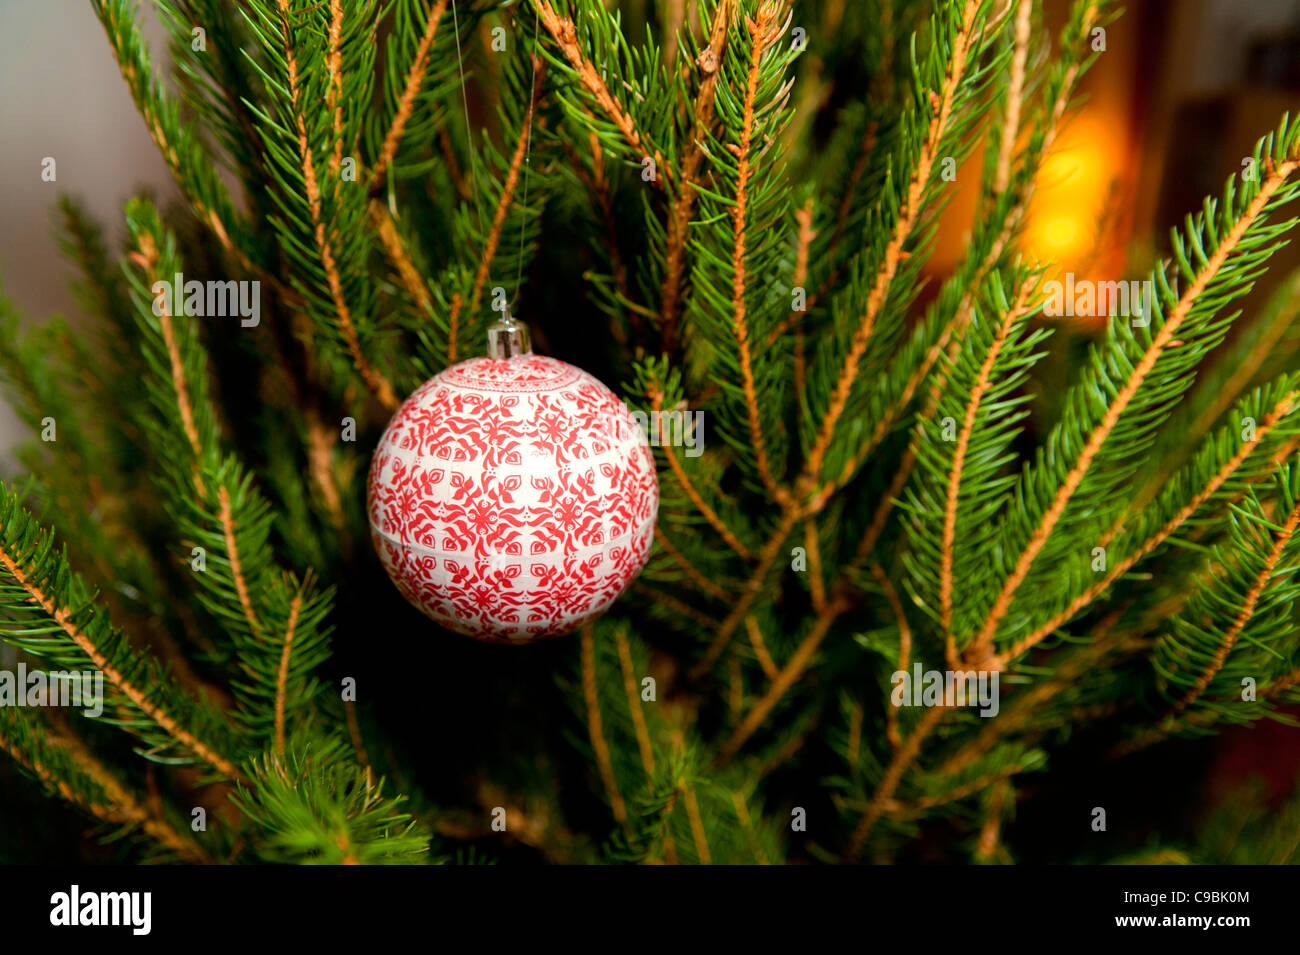 Weihnachtsstimmung Stockfotos und -bilder Kaufen - Alamy